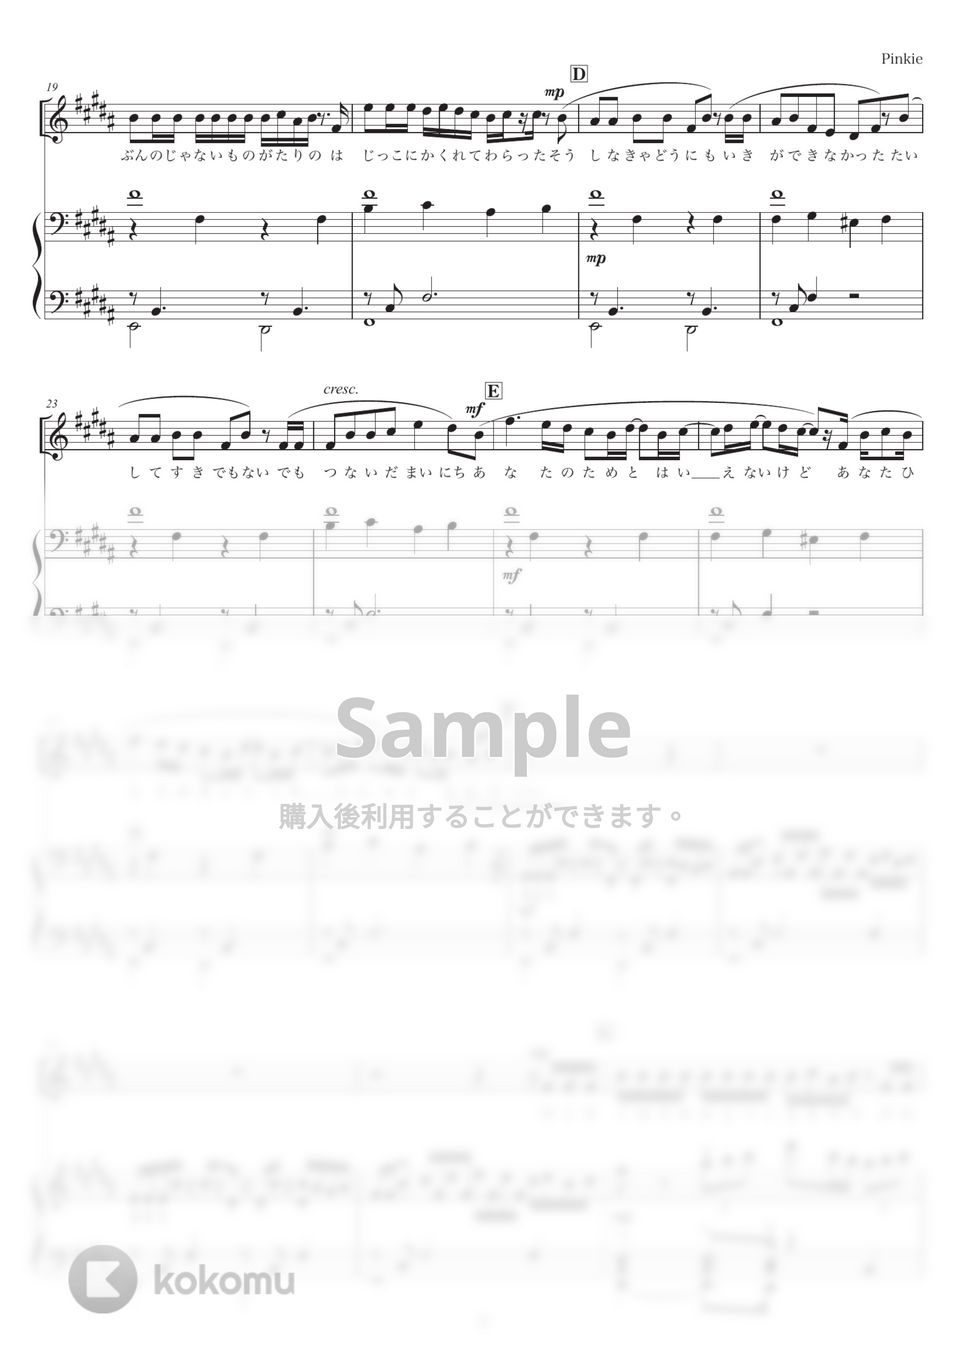 BUMP OF CHICKEN - Pinkie (ピアノ弾き語り) by otyazuke